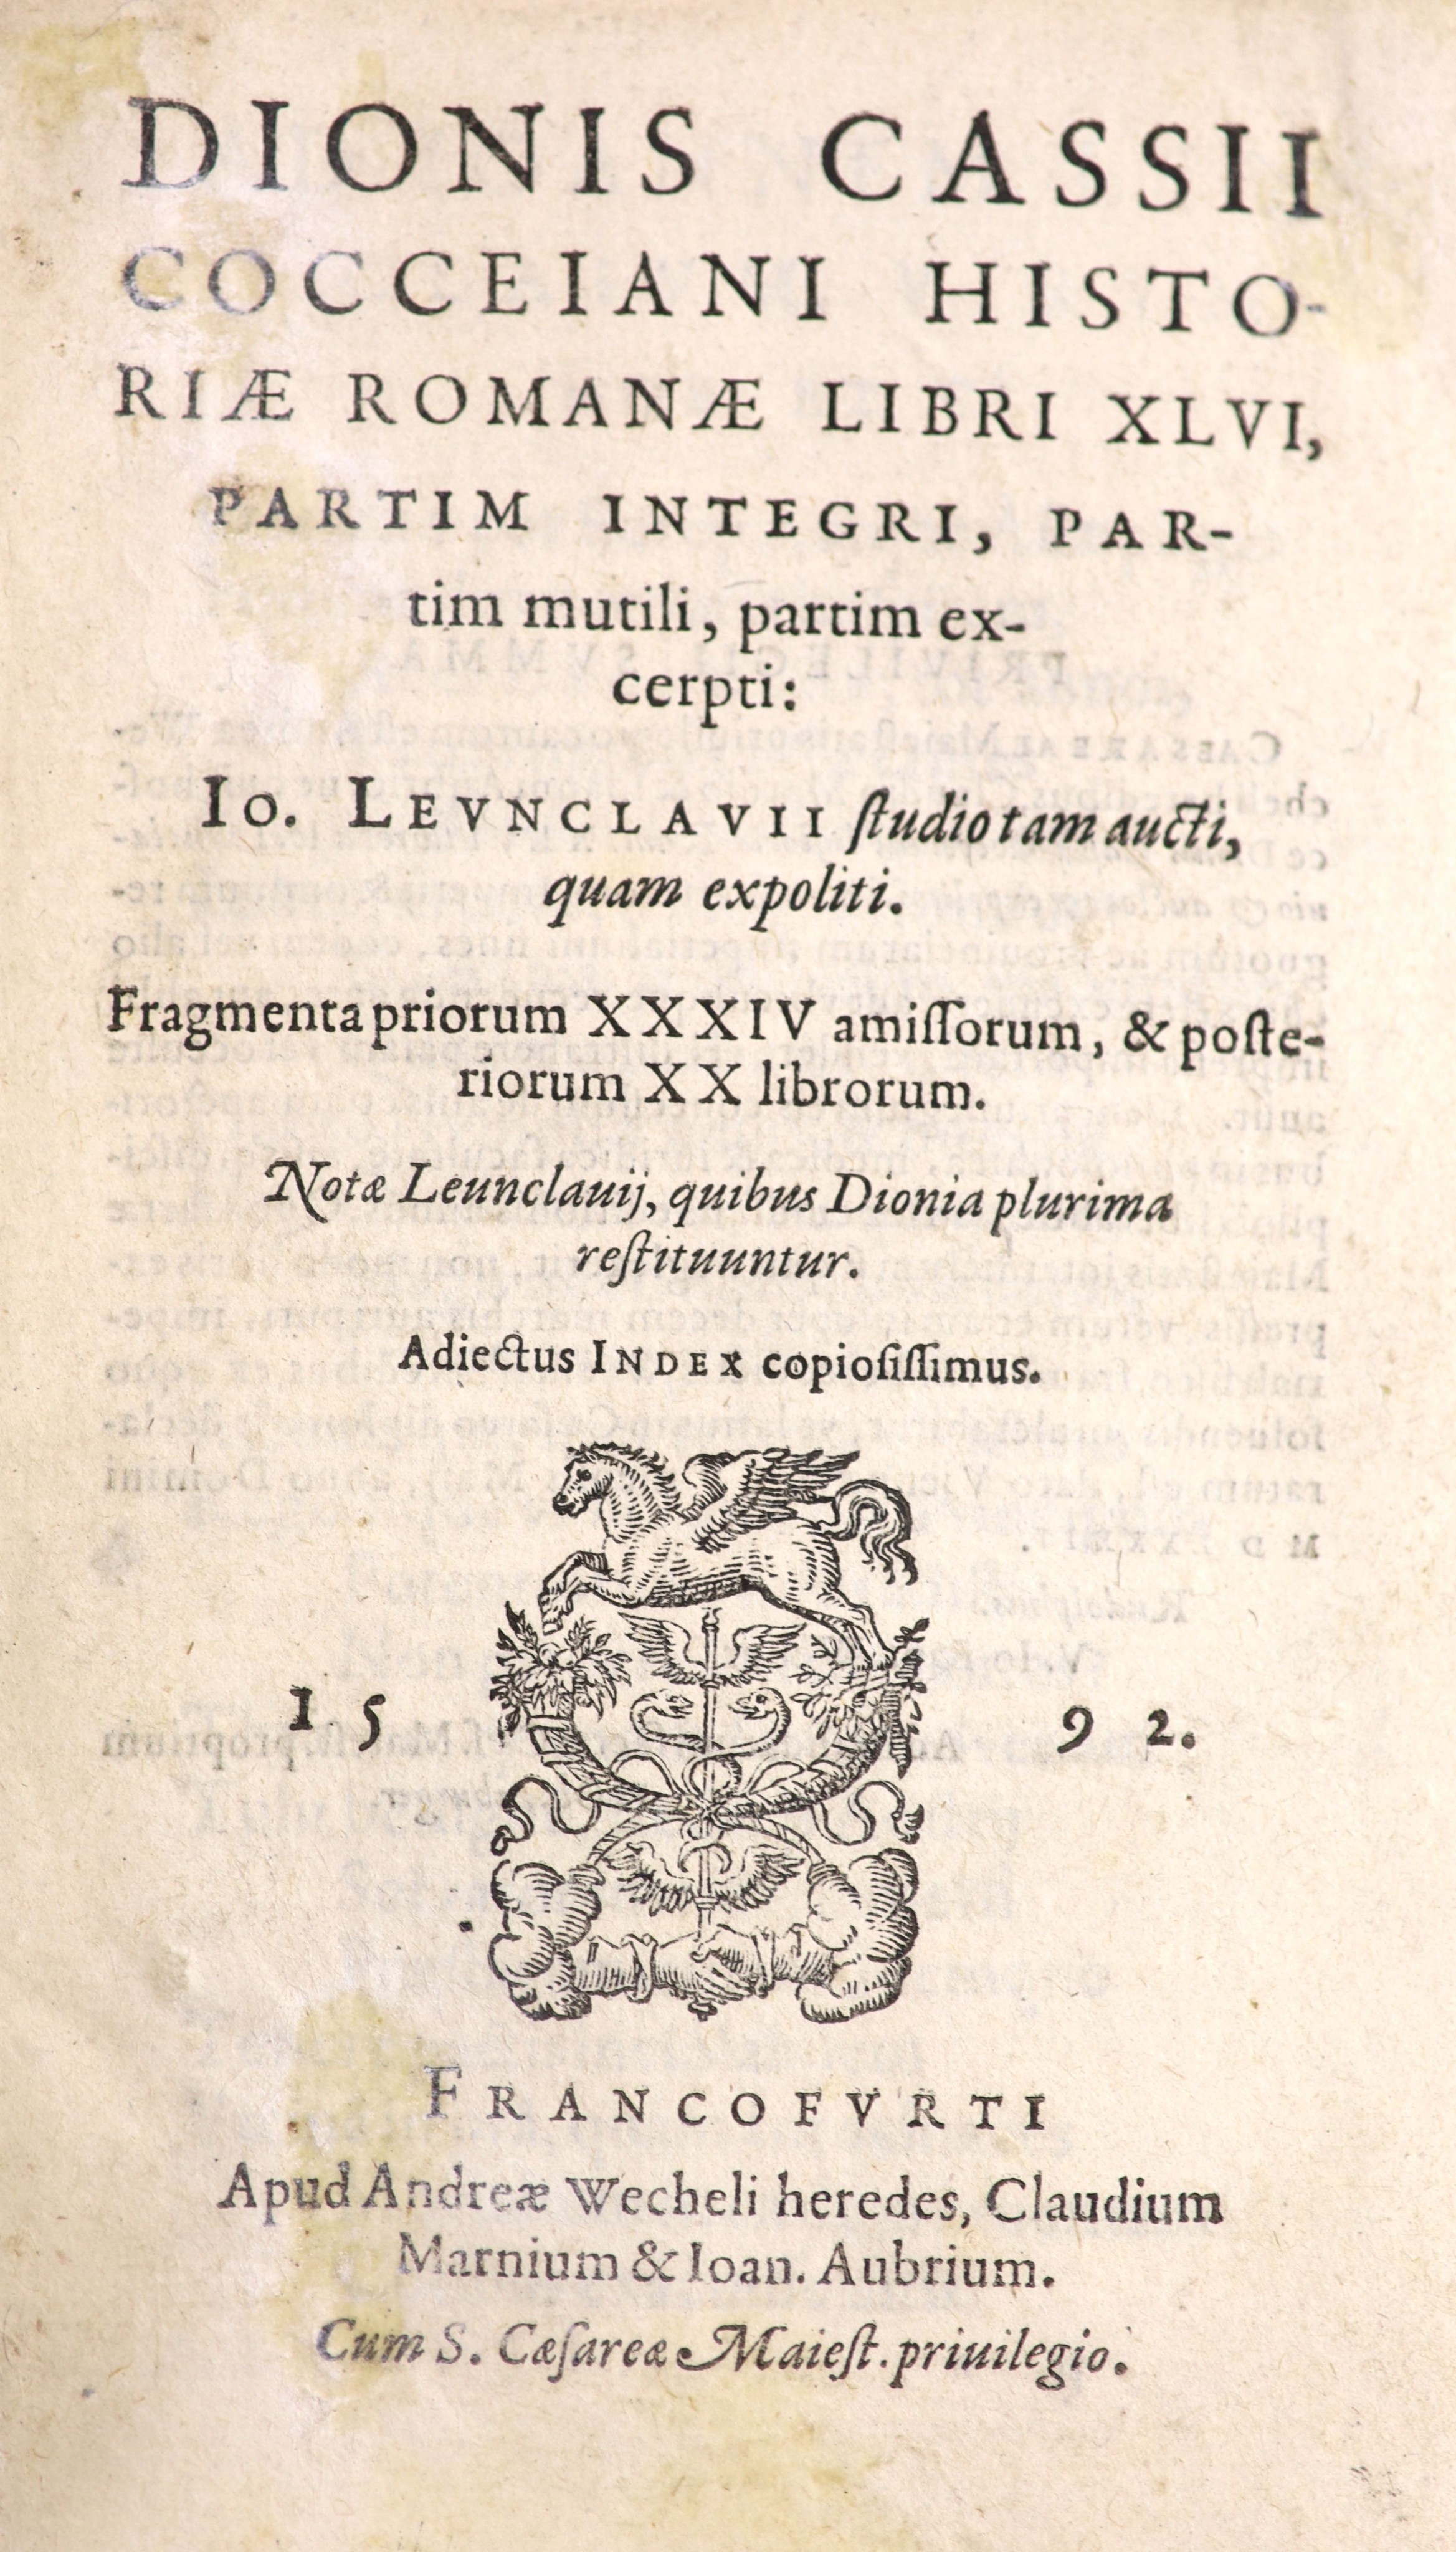 Cassius Dio Cocceiani - Dionis Cassii Cocceiani Historiae Romanae Libri XLVI, Partim Integri, Partim Multili, Partim Excerpti, 8vo,